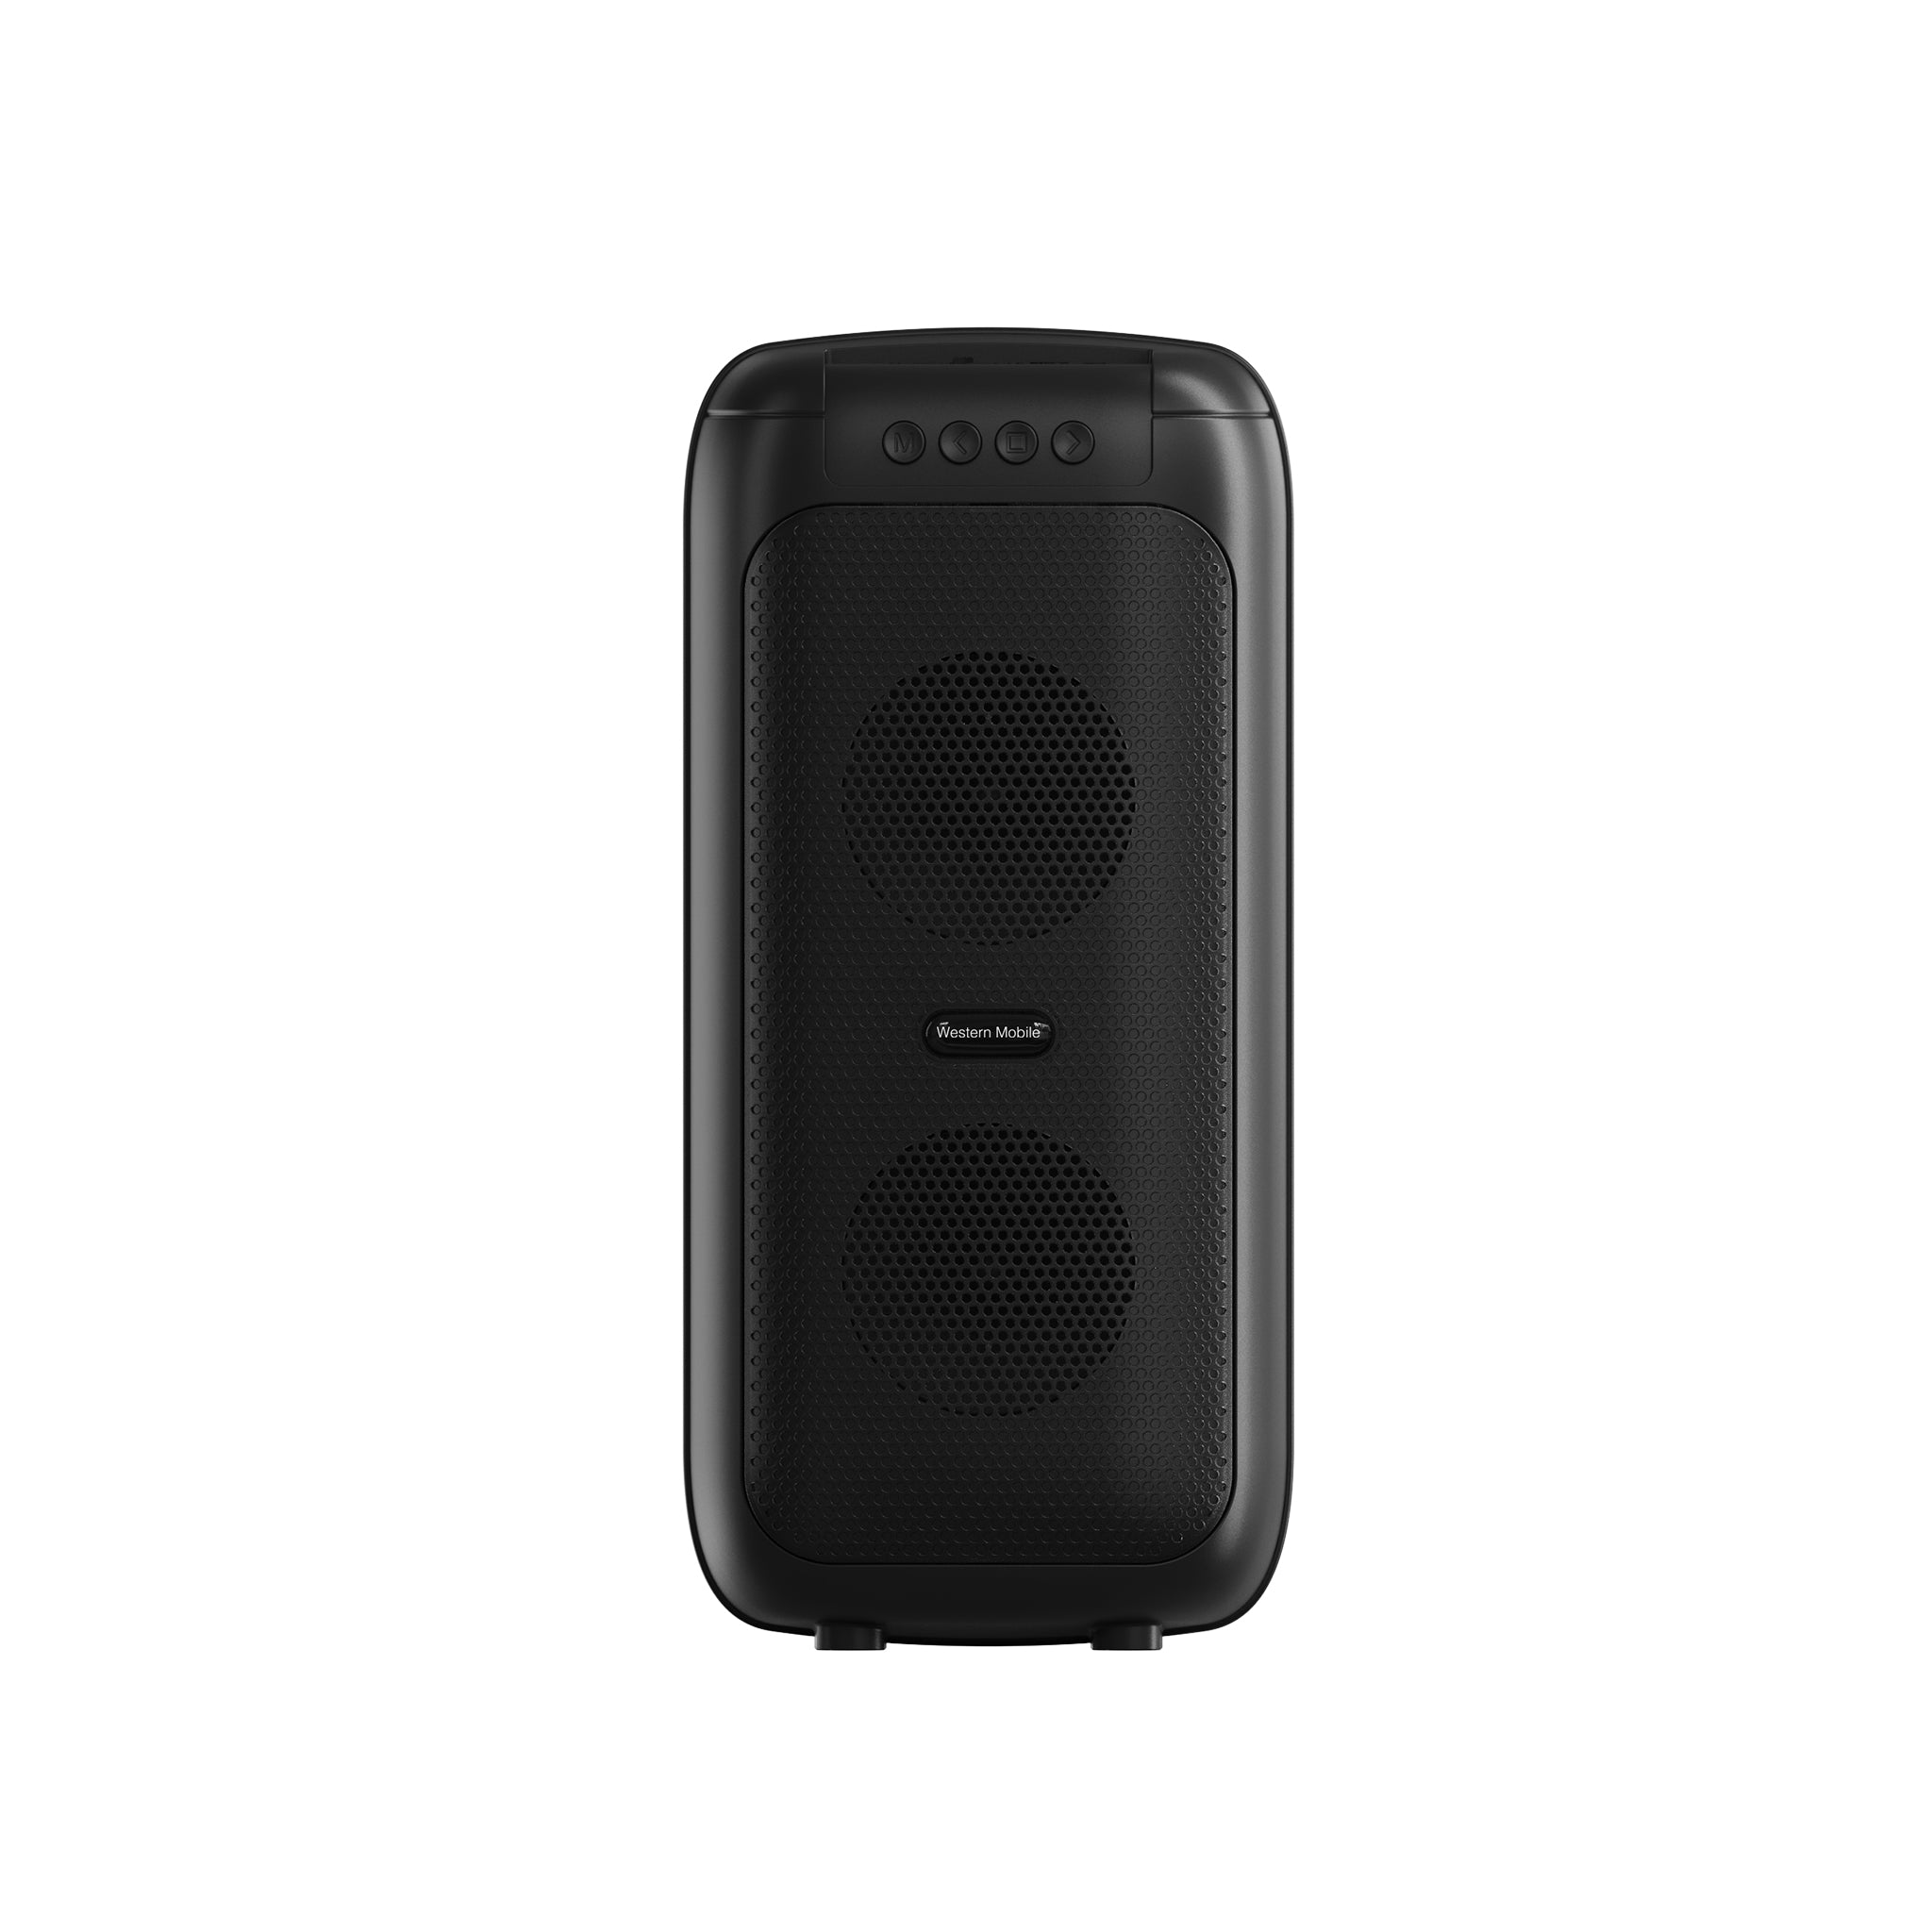 Western Mobile Portable Wireless Speaker Urban SP300